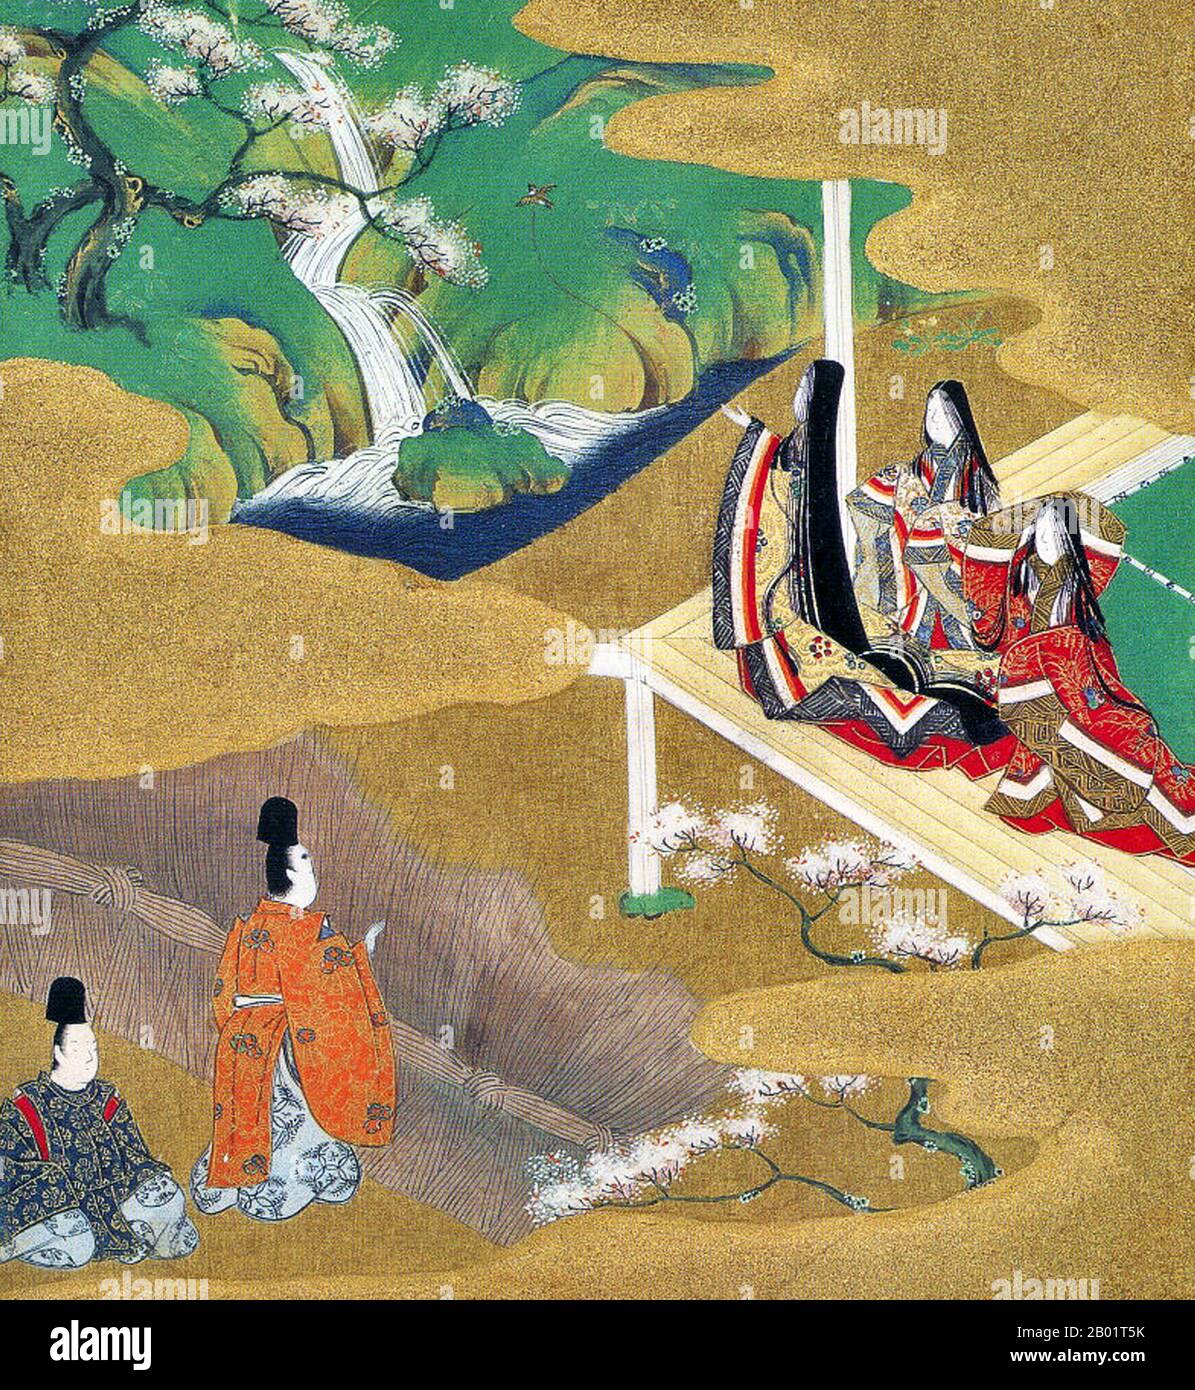 Japon : 'Chapitre 5 - Wakamurasaki' du 'Conte de Genji'. Peinture de Tosa Mitsuoki (23 octobre 1617 - 25 septembre 1691), fin du 17e siècle. Le Conte du Genji (Genji monogatari) est un ouvrage classique de la littérature japonaise attribué à la noble japonaise Murasaki Shikibu au début du 11e siècle, autour du pic de l'époque Heian. Il est parfois appelé le premier roman du monde, le premier roman moderne, le premier roman psychologique ou le premier roman encore considéré comme un classique. Notamment, le roman illustre également une représentation unique des moyens de subsistance des courtisans de l'ère Heian. Banque D'Images